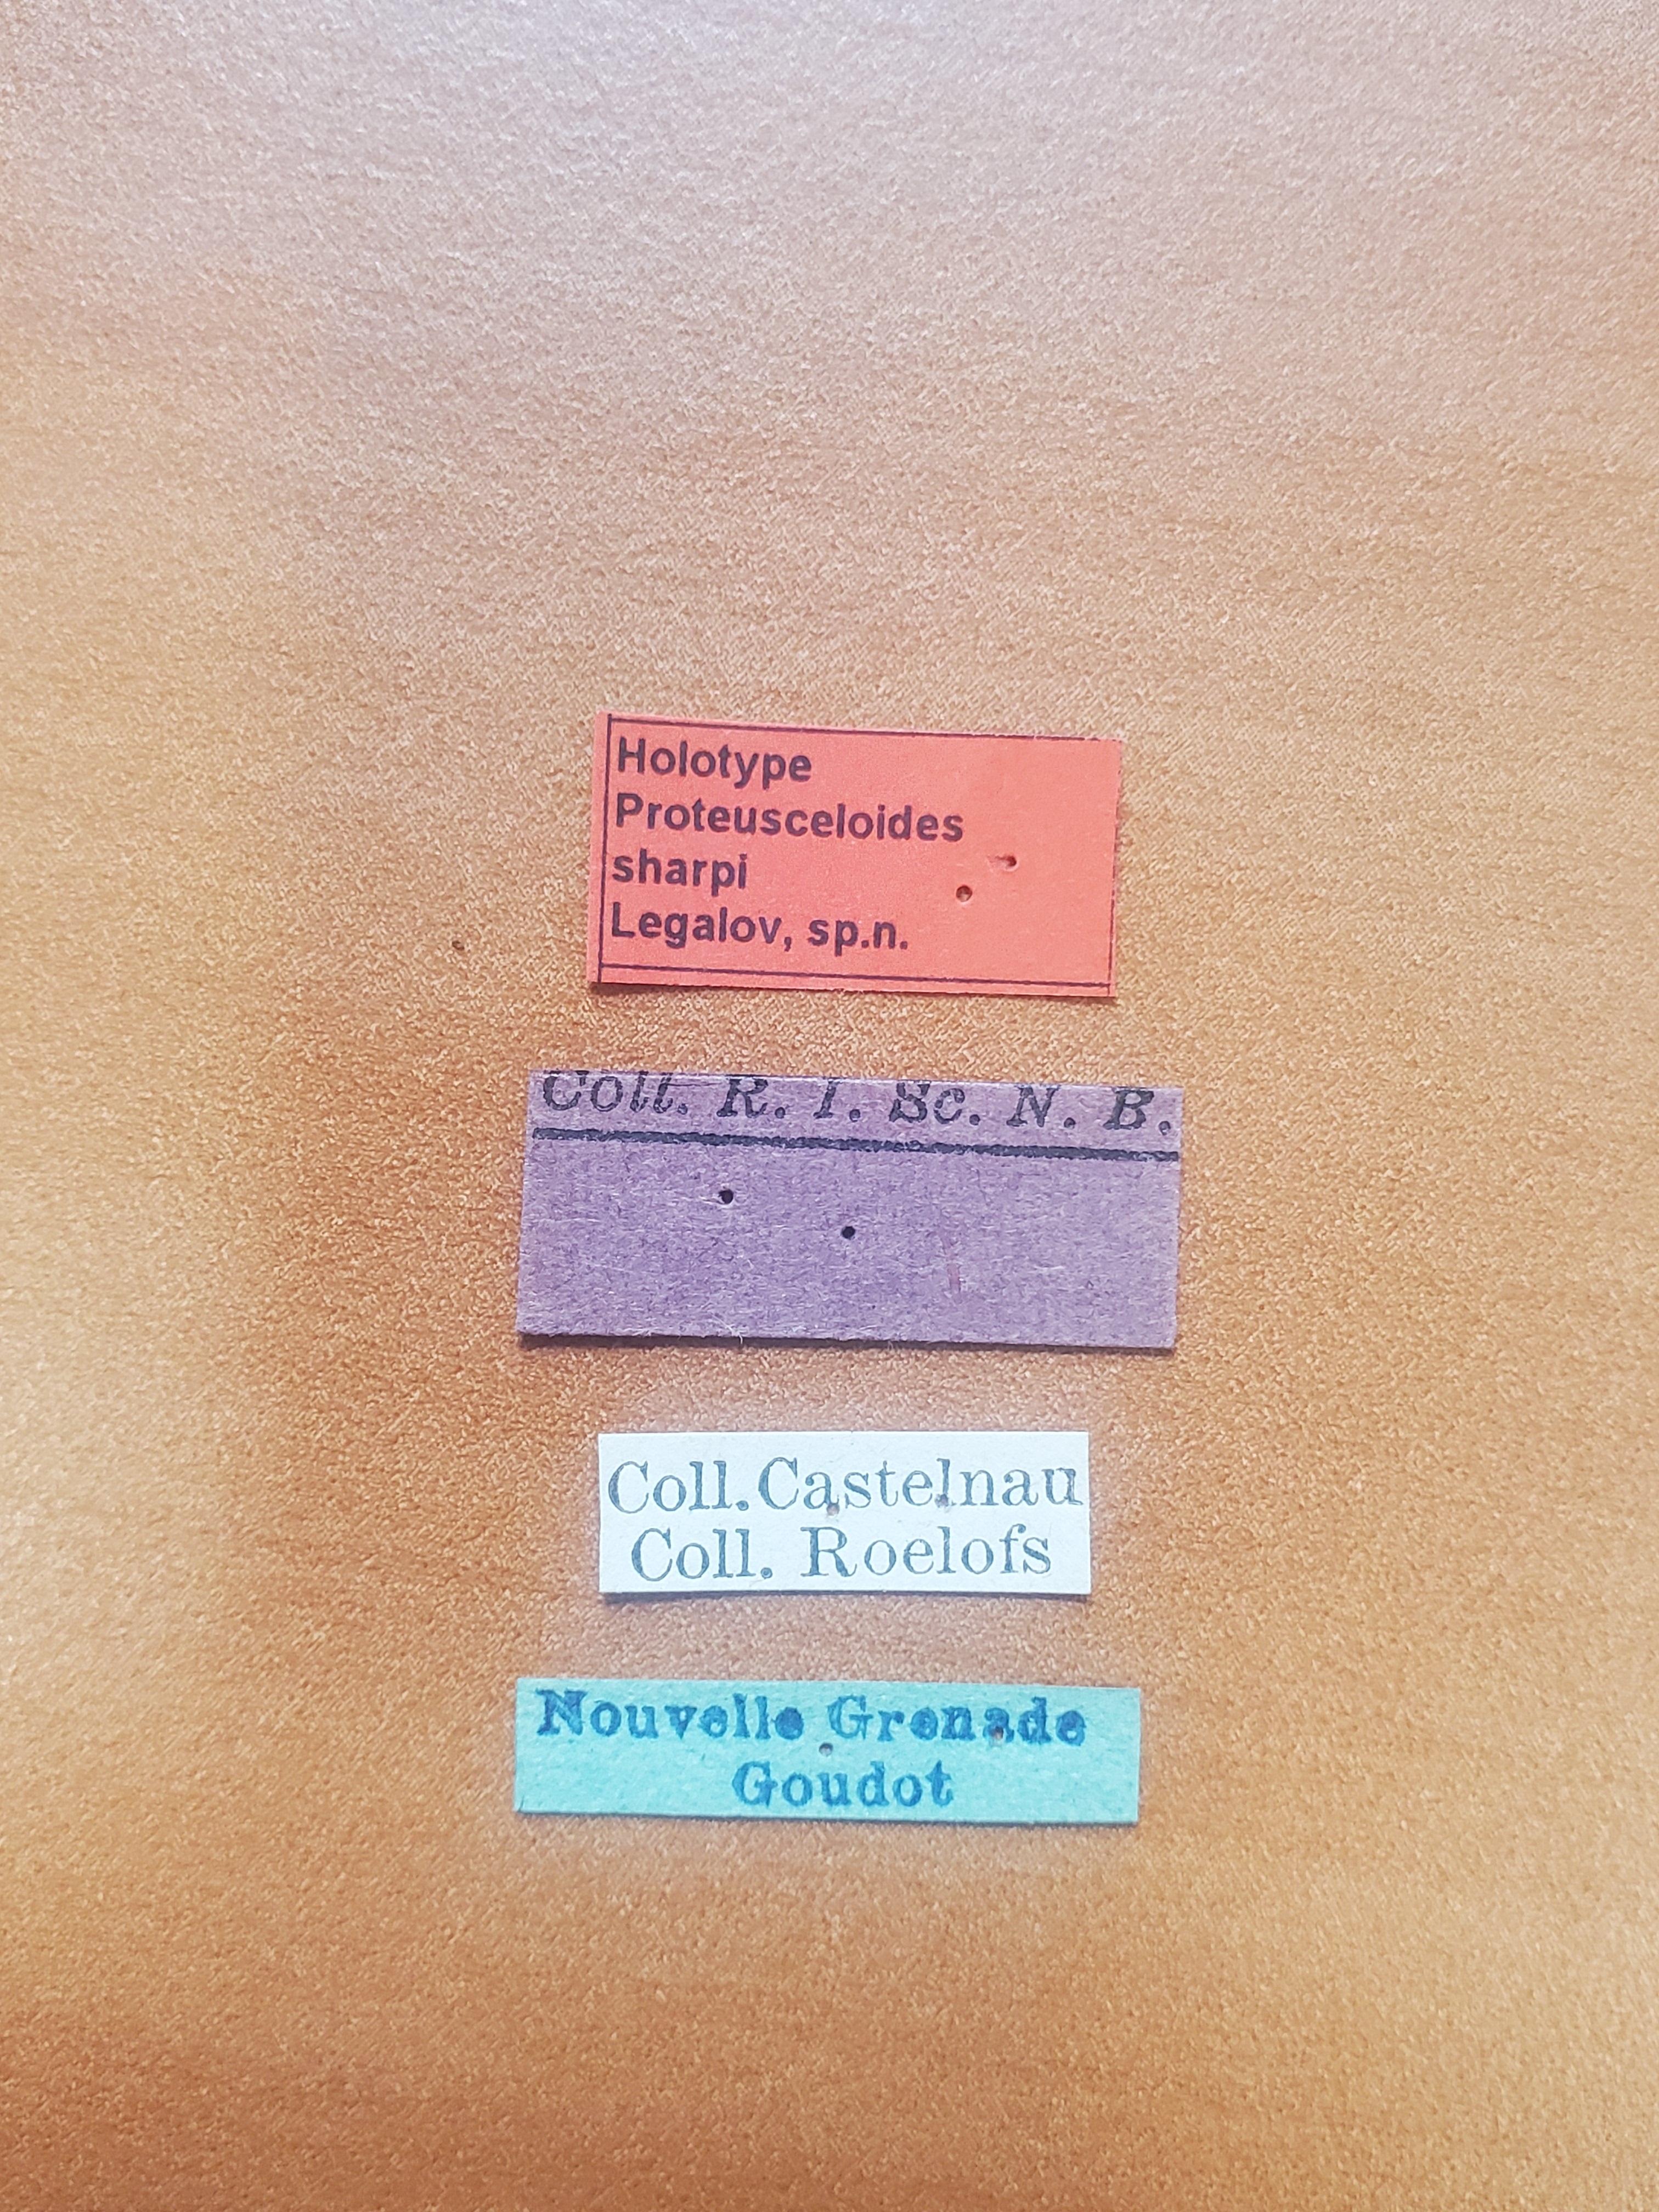 Proteusceloides sharpi ht Labels